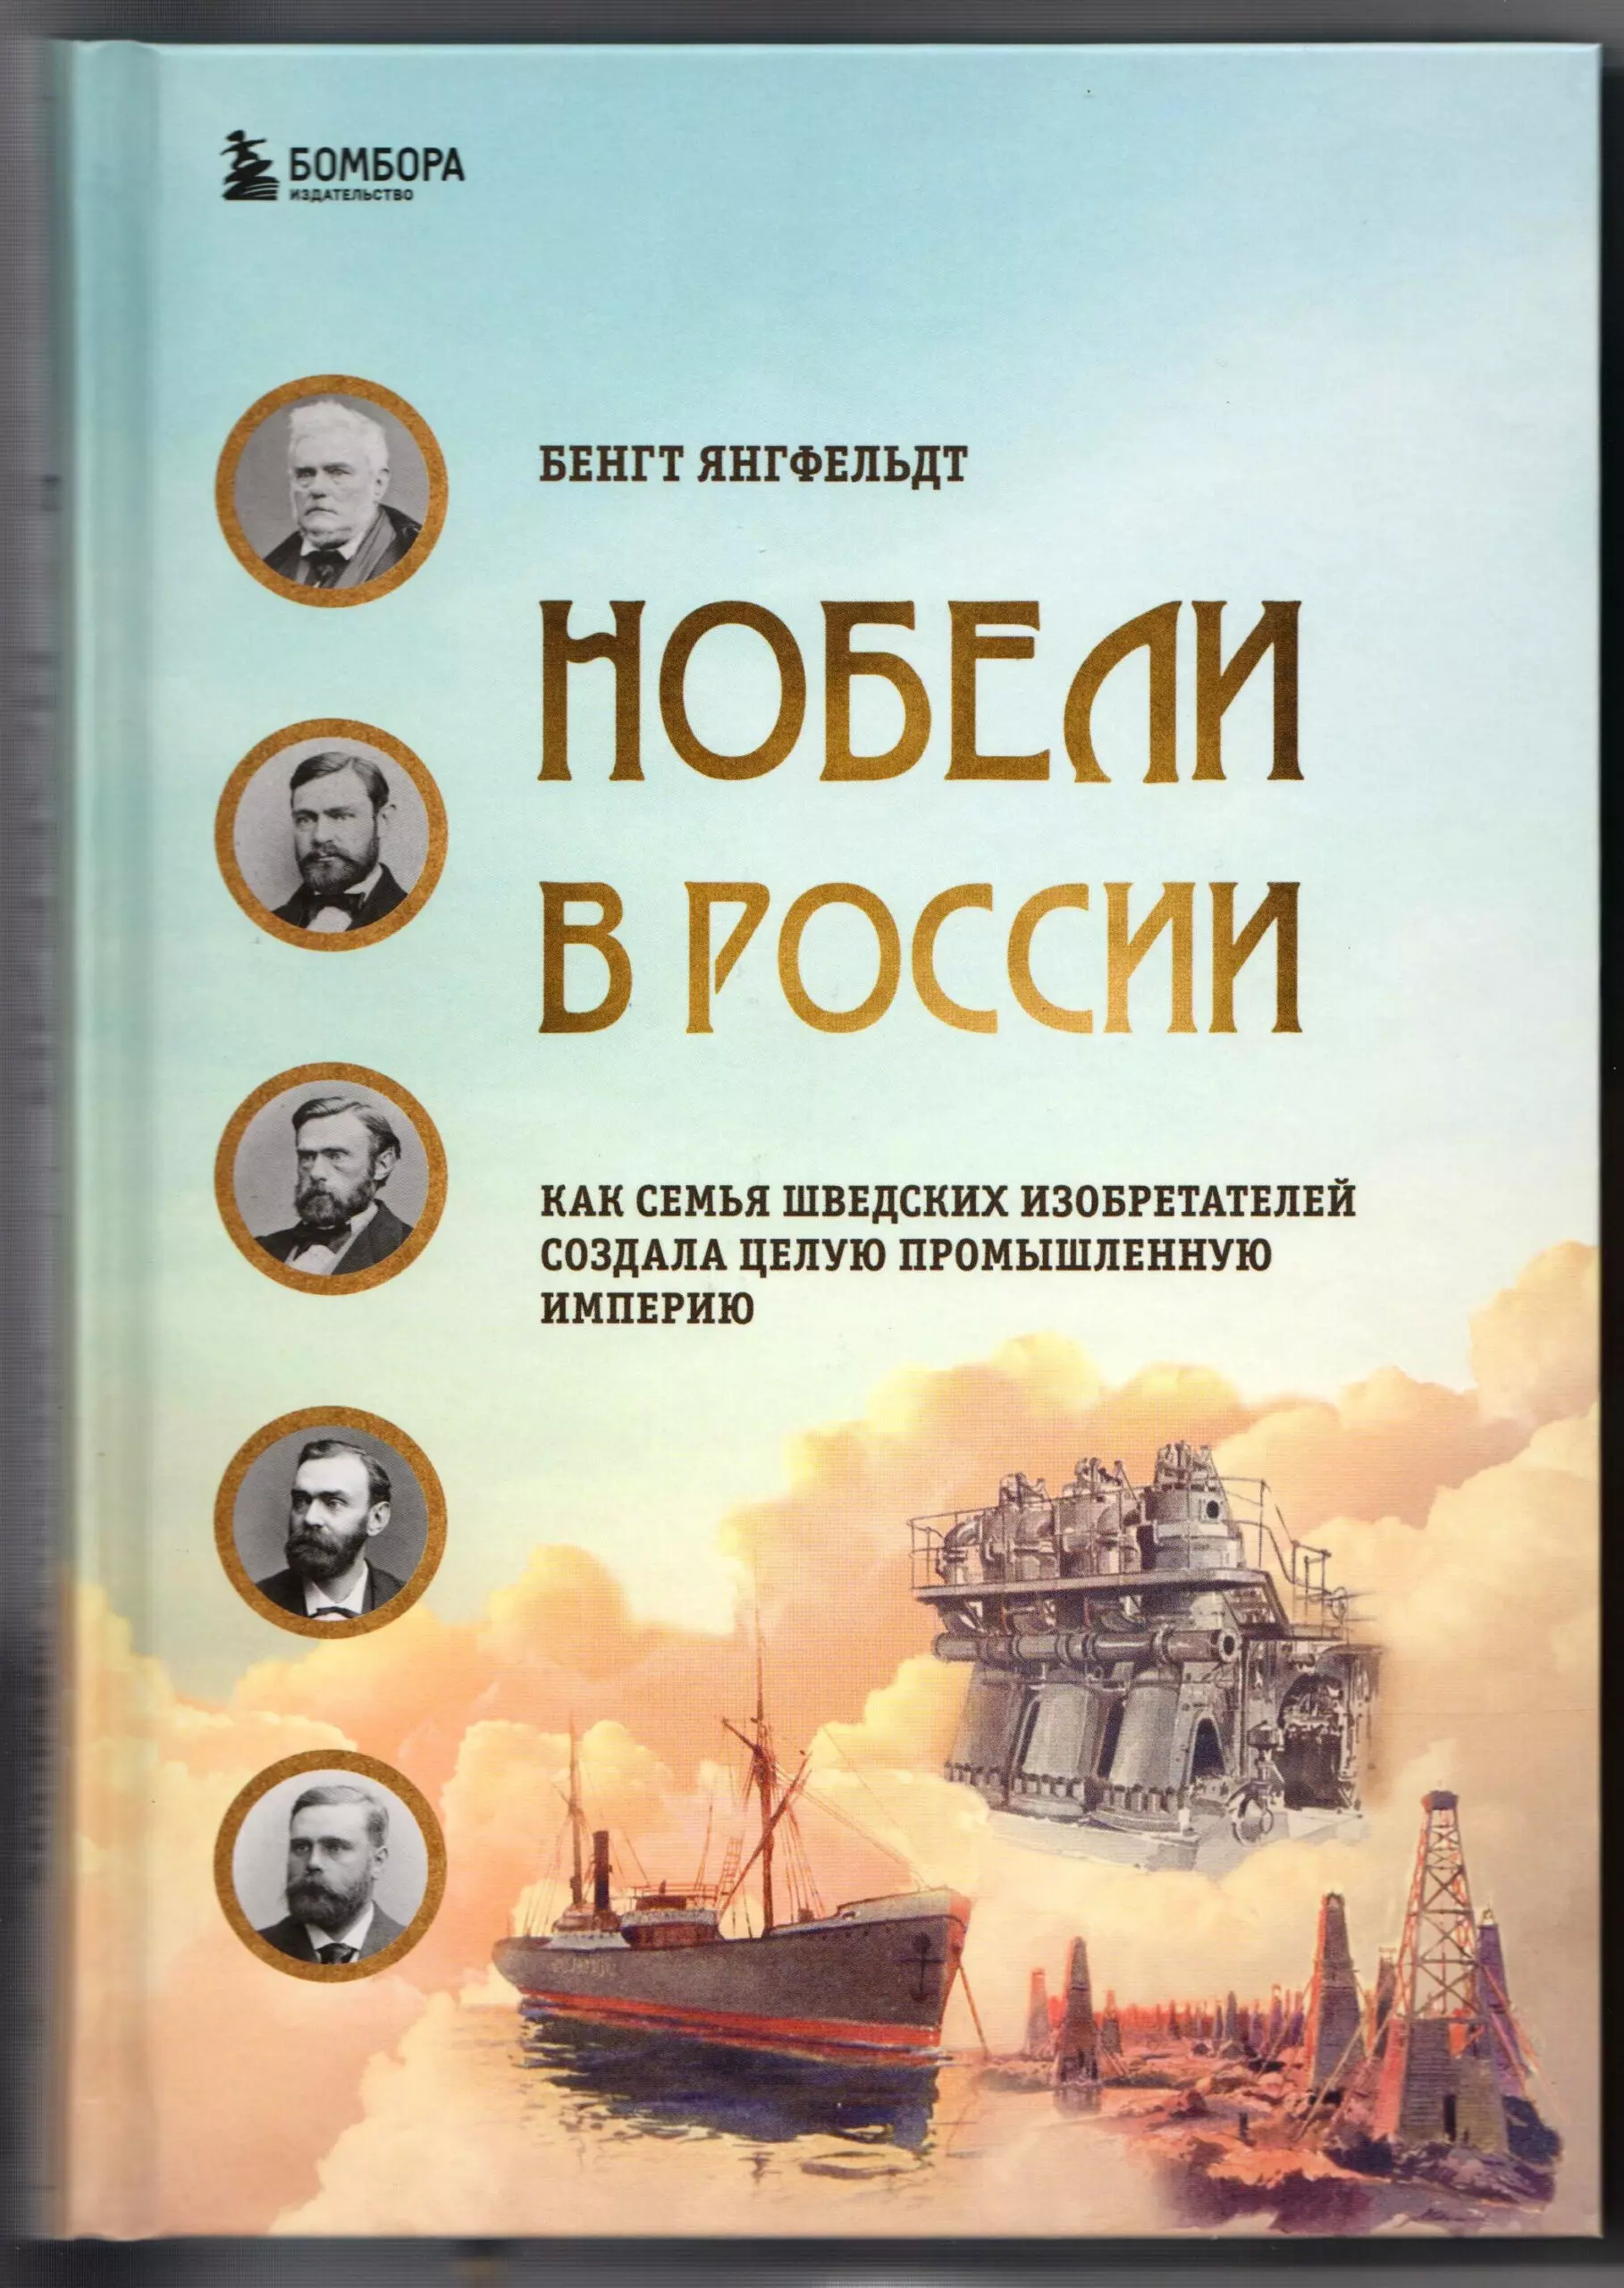 Внимание, книжная новинка: Нобели в России! Кисловодск в биографии знаменитой семьи изобретателей